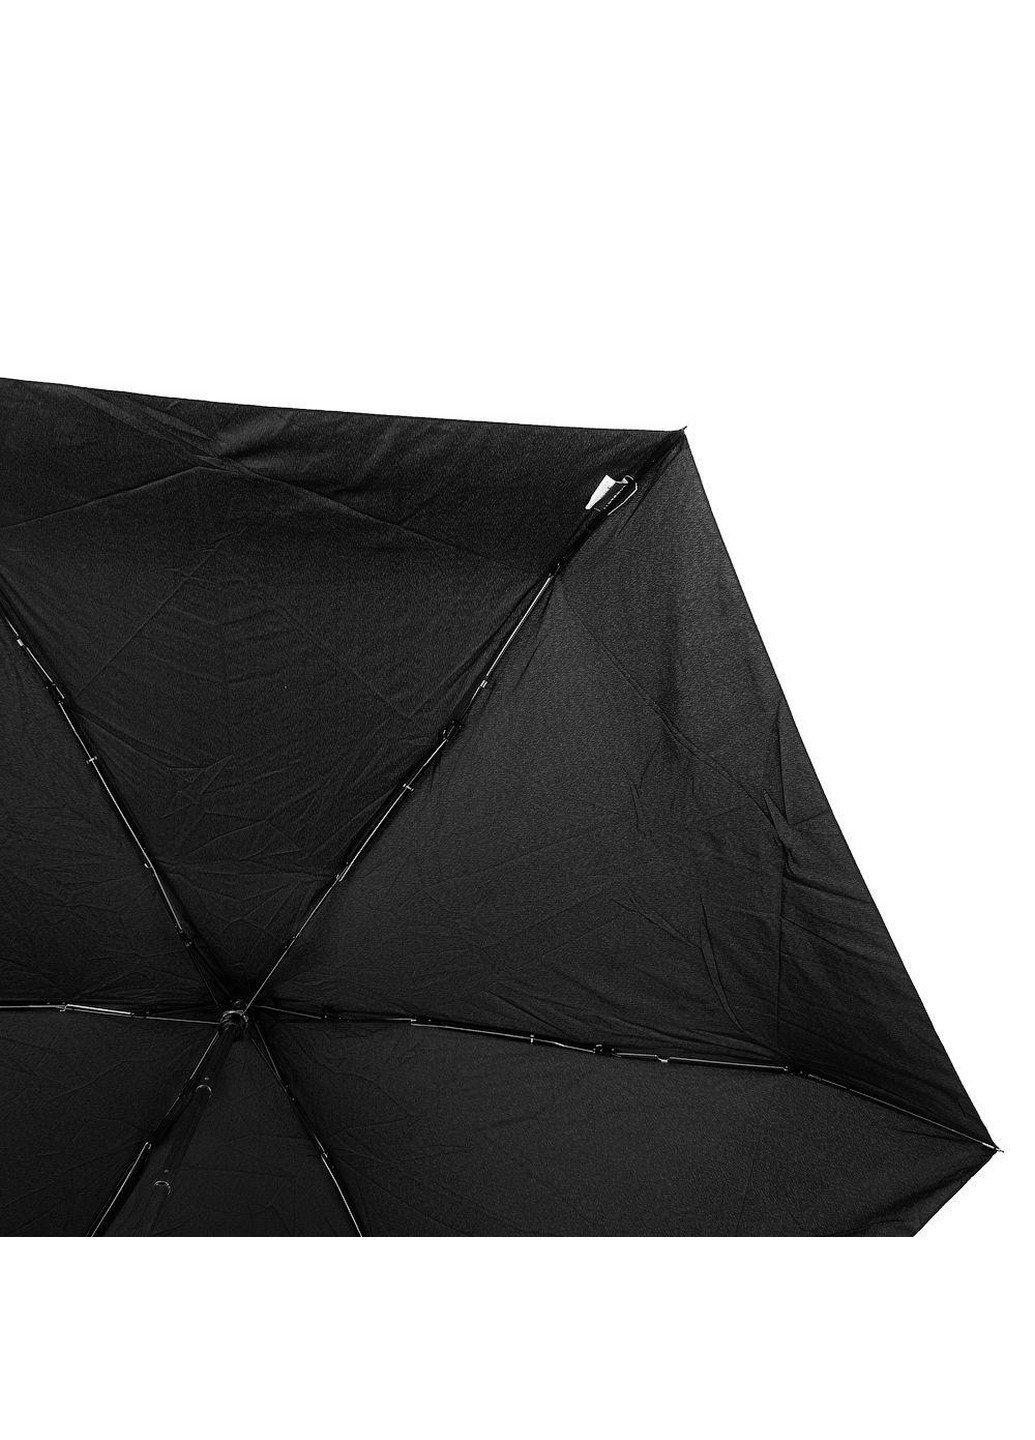 Мужской складной зонт механический 100 см Lamberti (260330795)